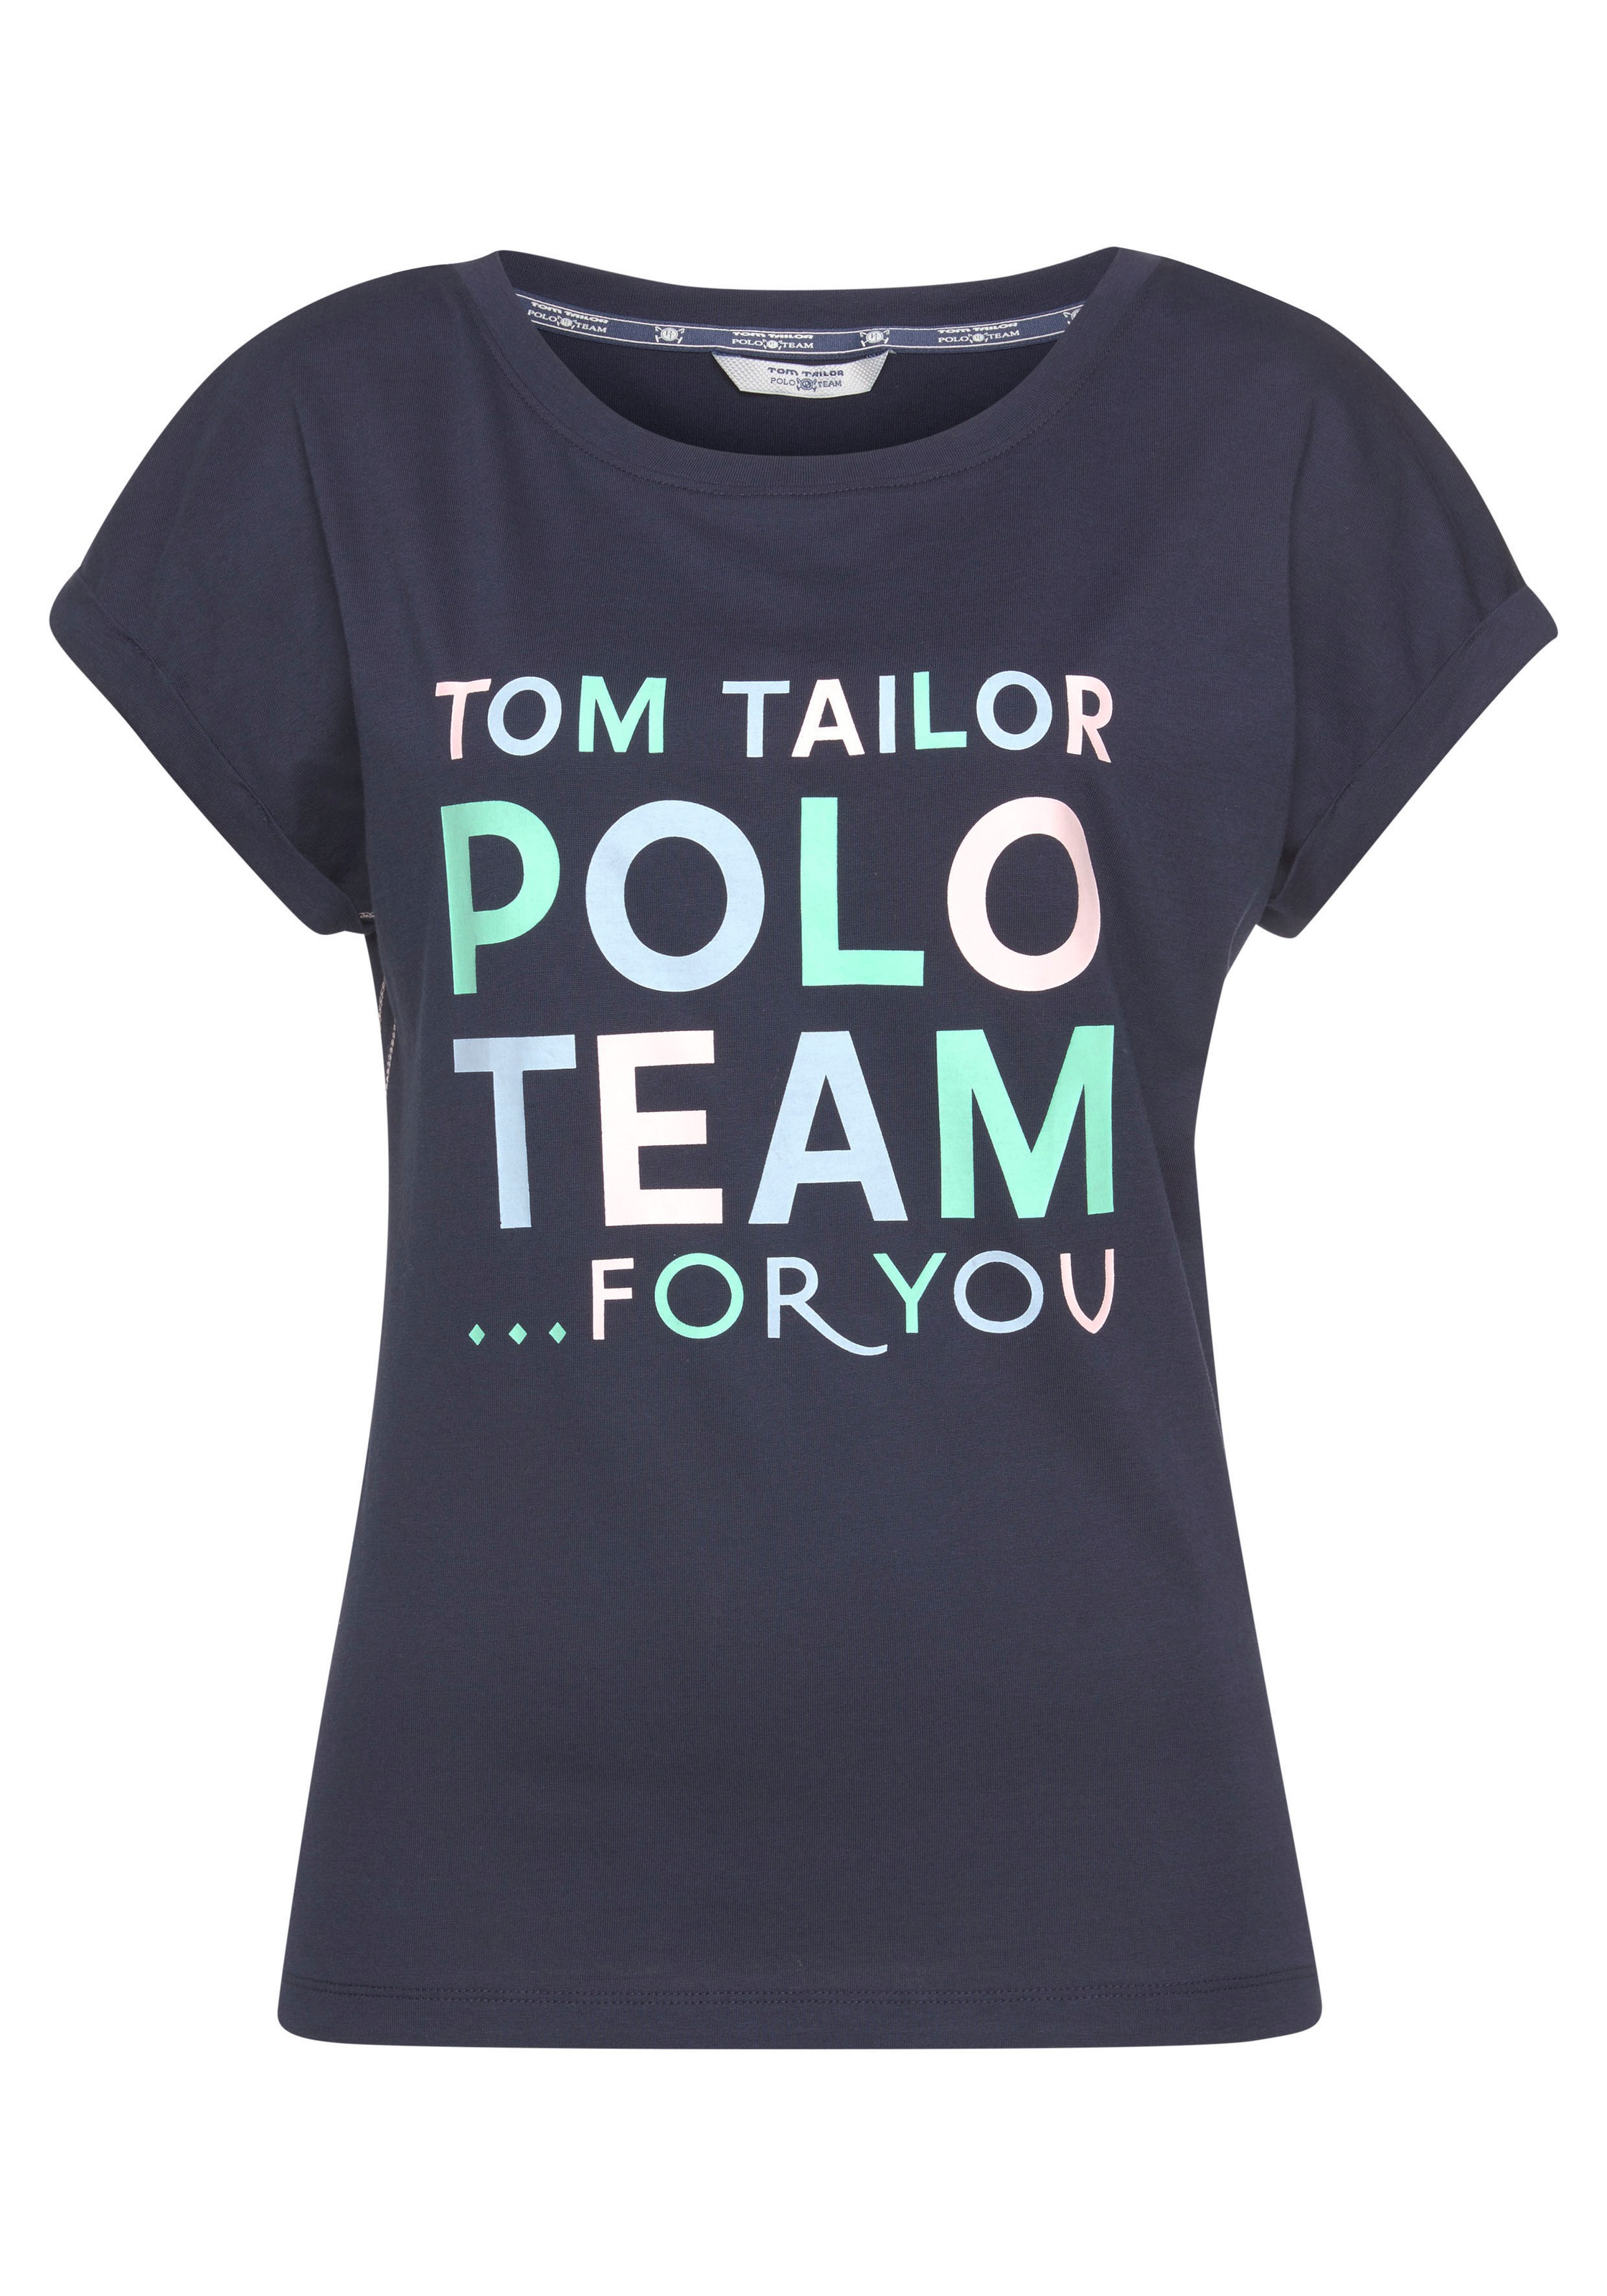 Print-Shirt, Team großem Polo bei TAILOR TOM Logo-Print ♕ farbenfrohen